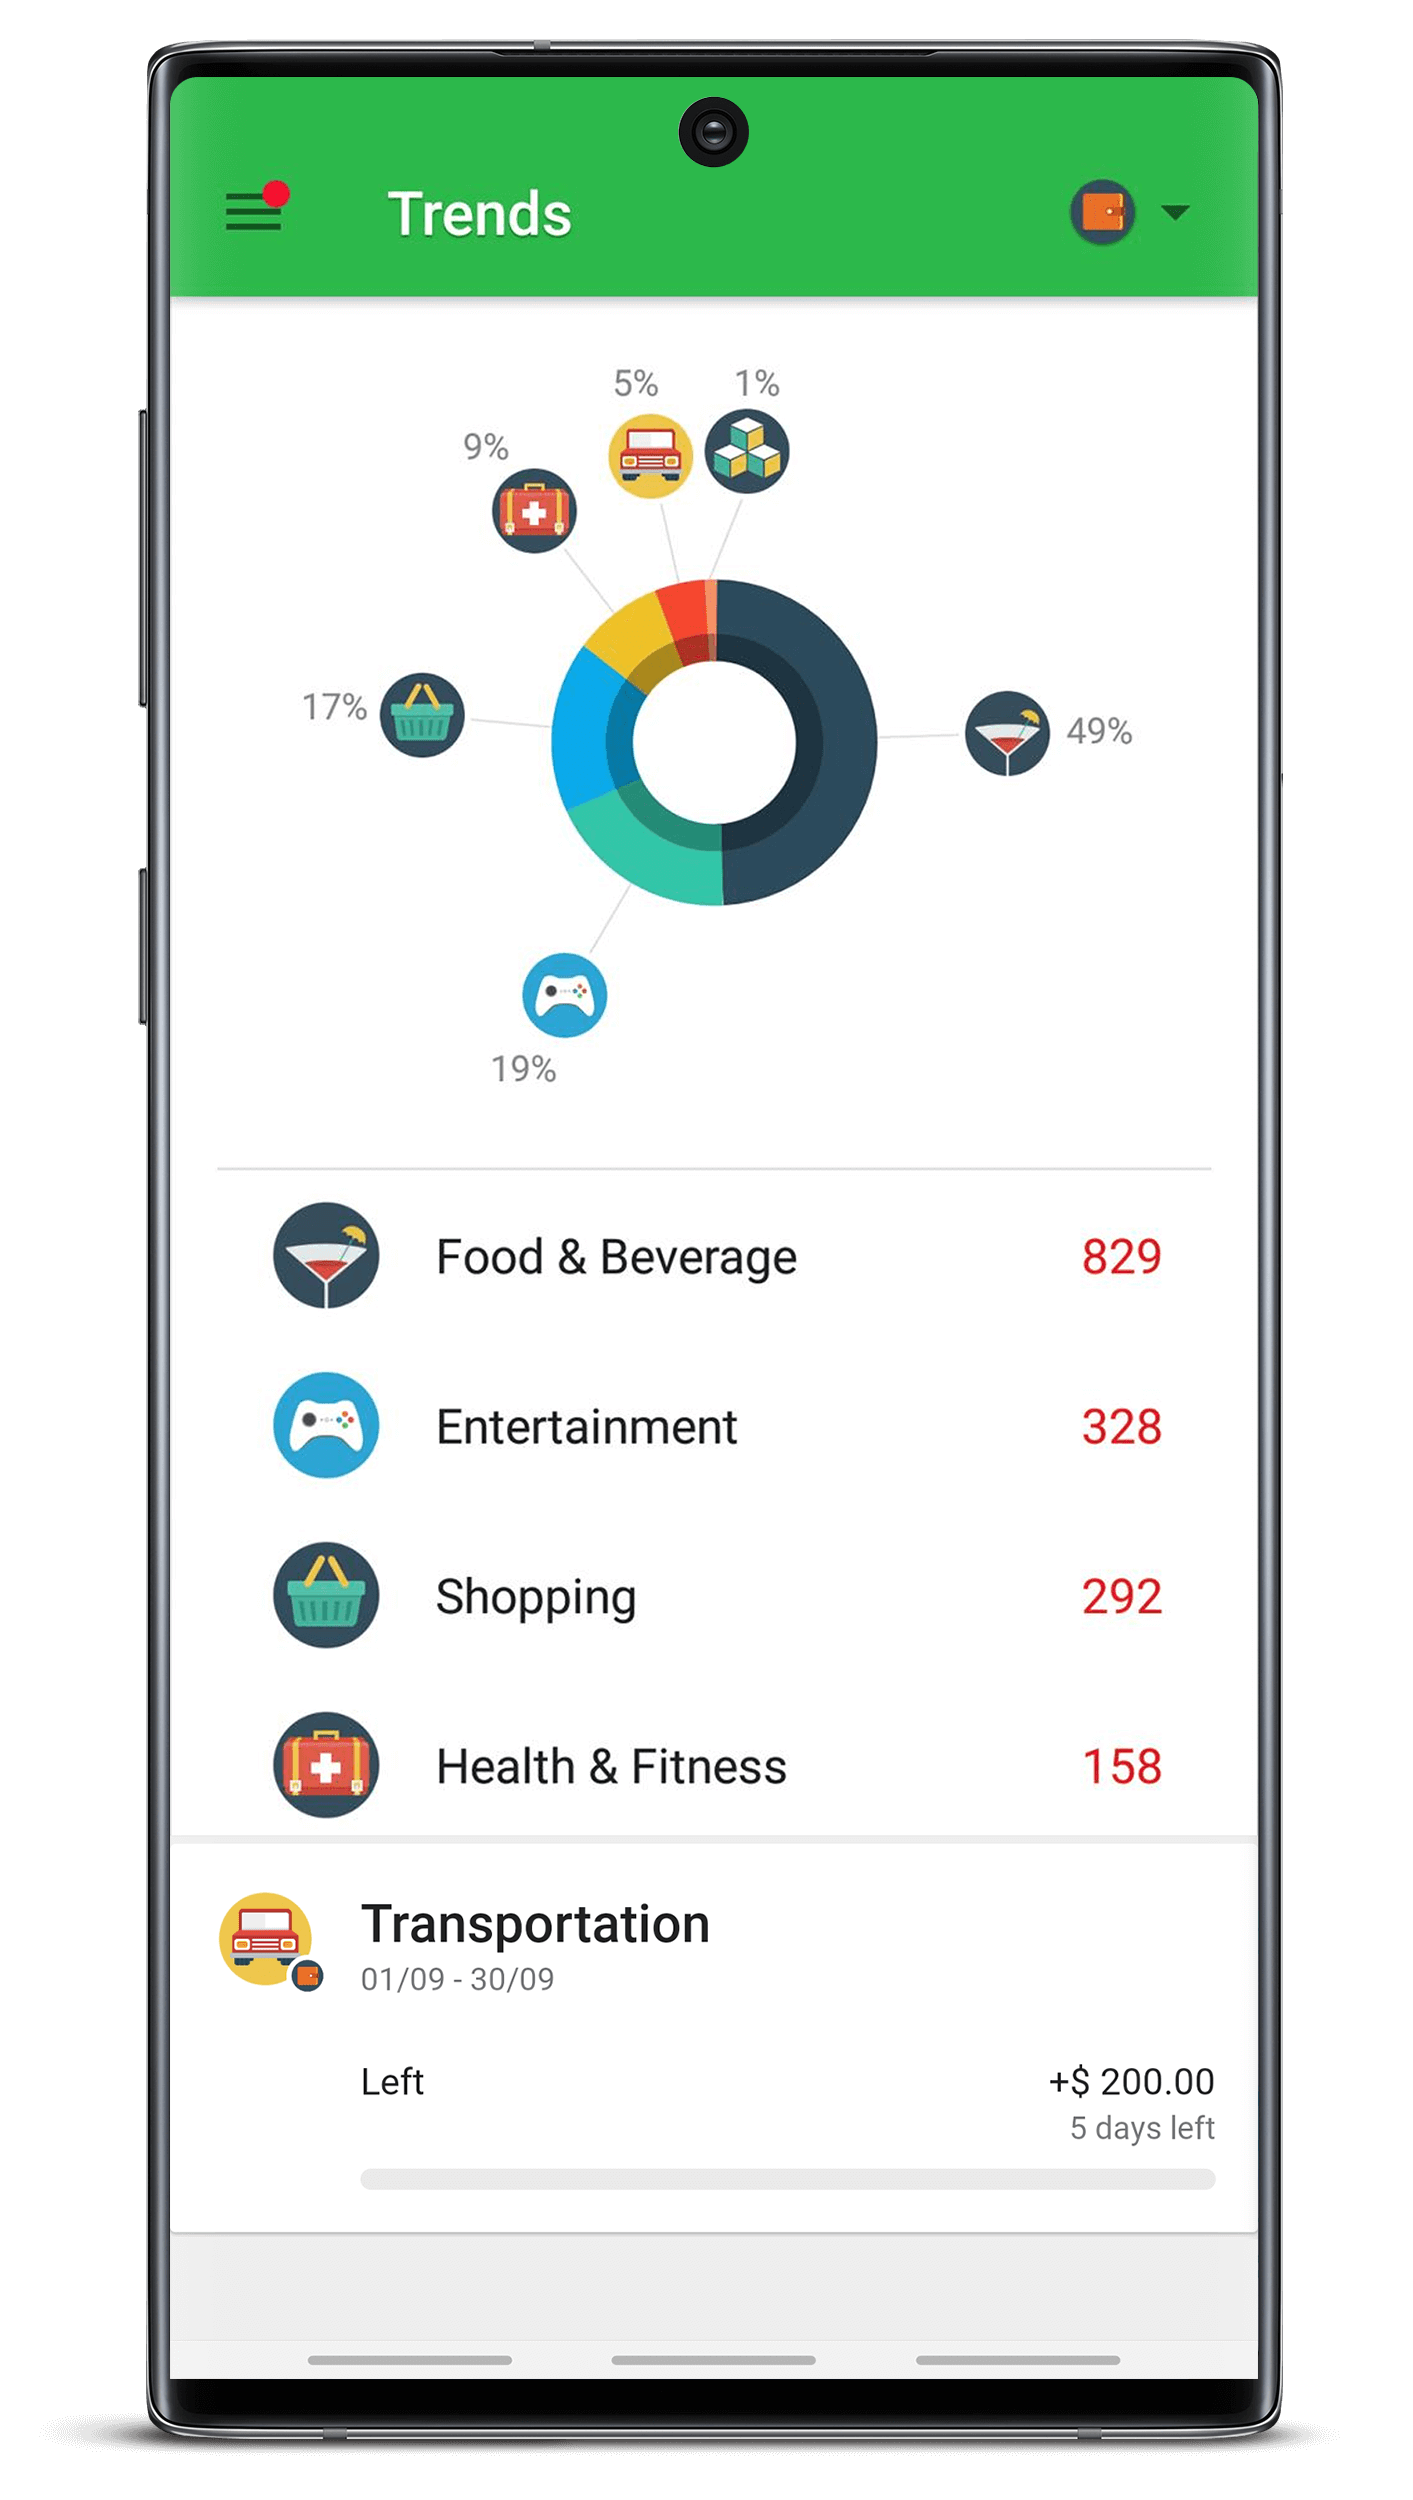 Money Lover, Spending manager app